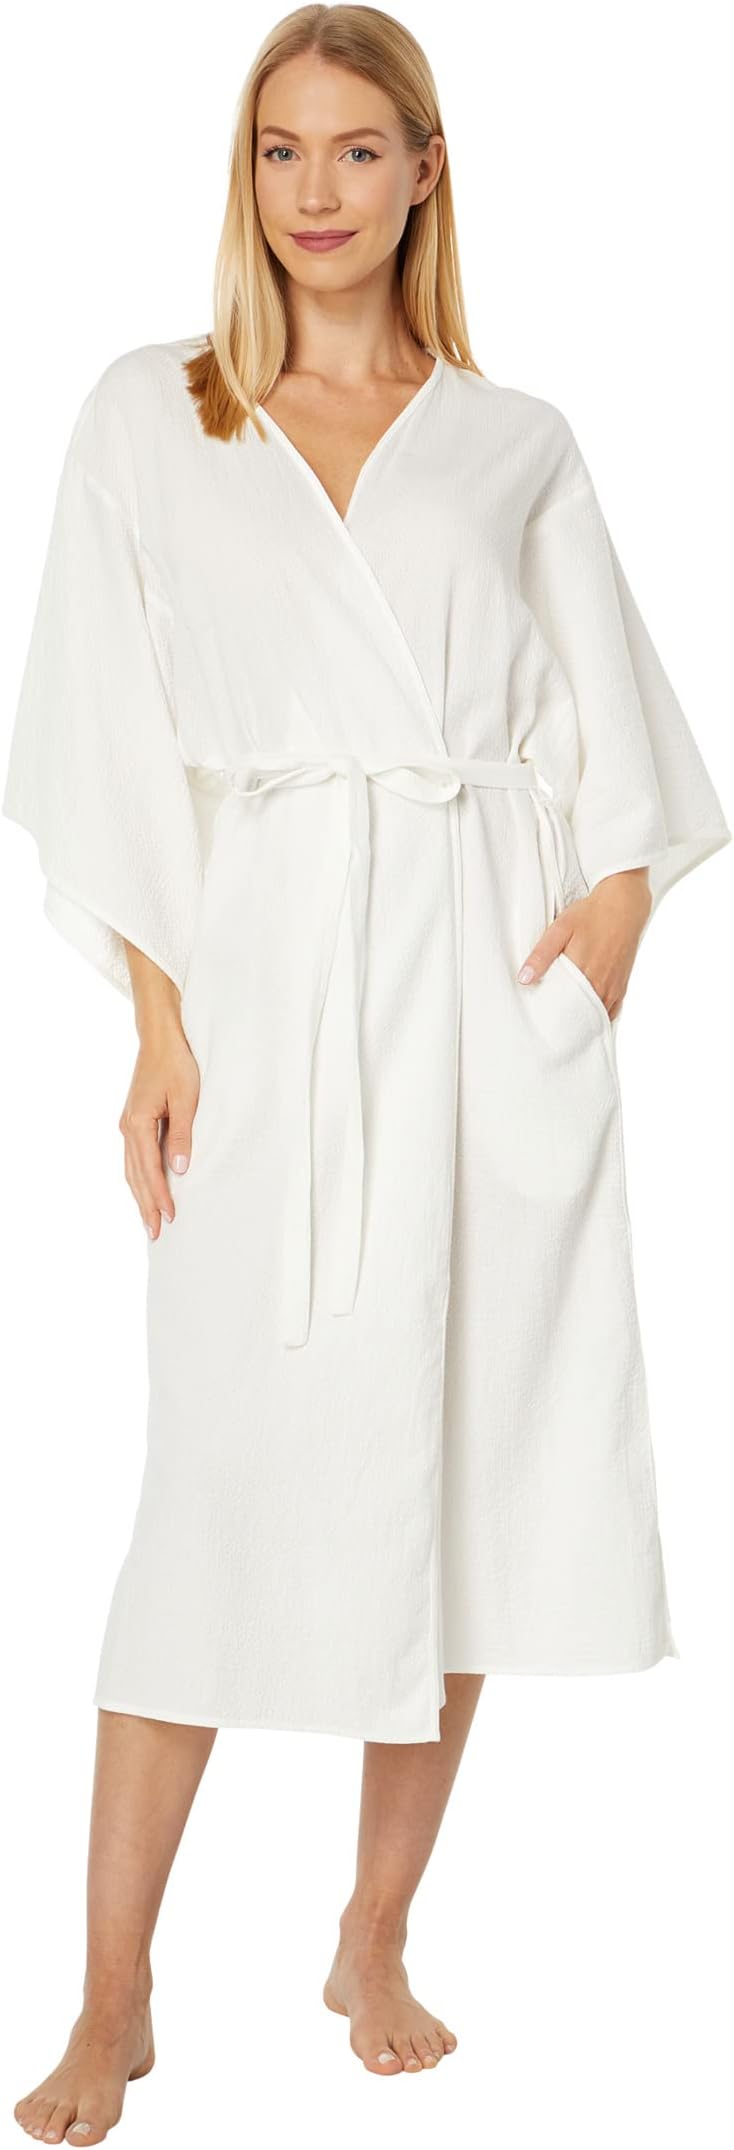 Халат Onsen Lightweight Cotton Robe Natori, белый